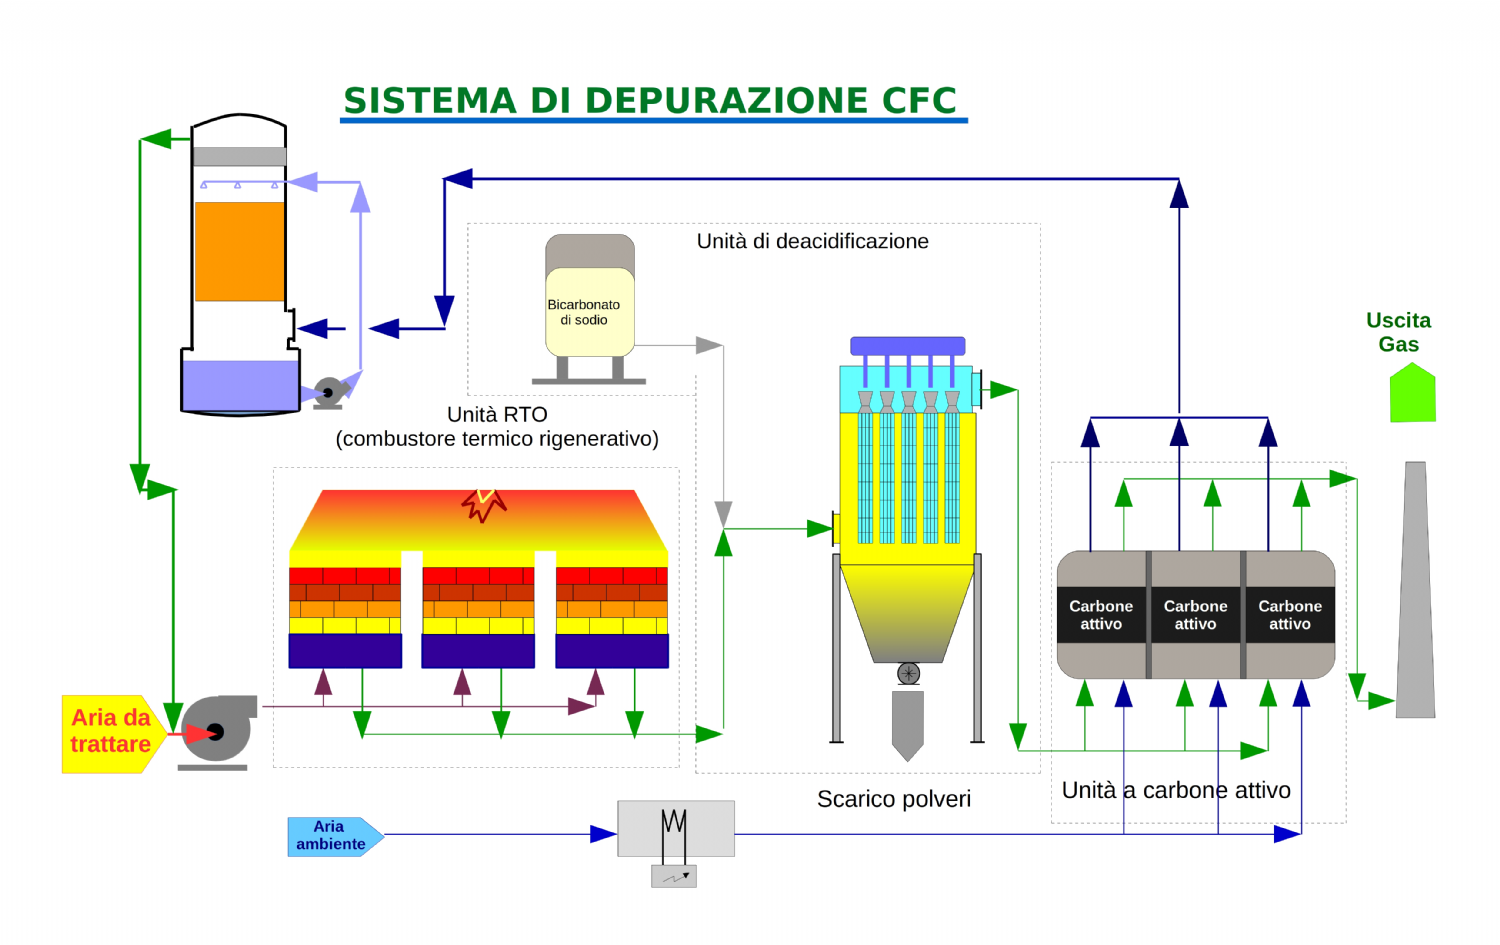 CFC depuration system